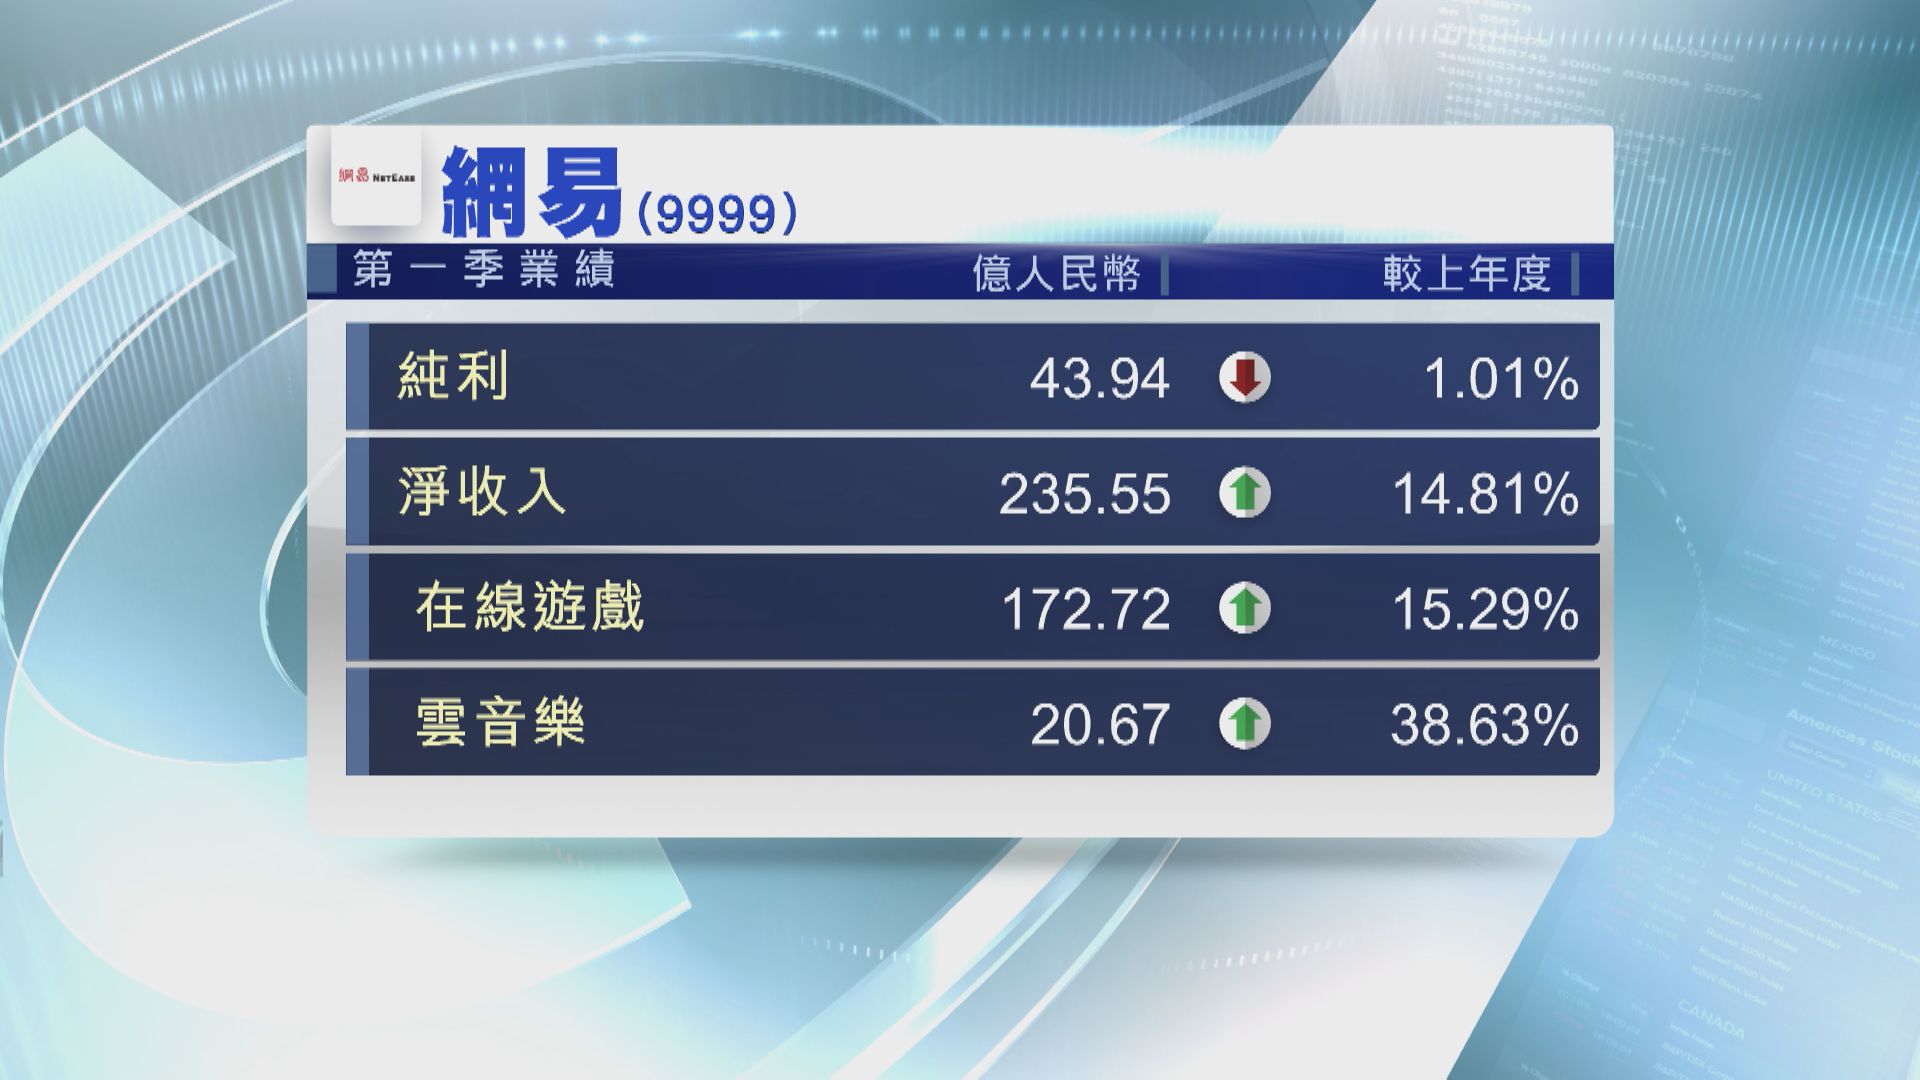 【業績速報】網易首季淨收入增近15% 派息6.44美仙